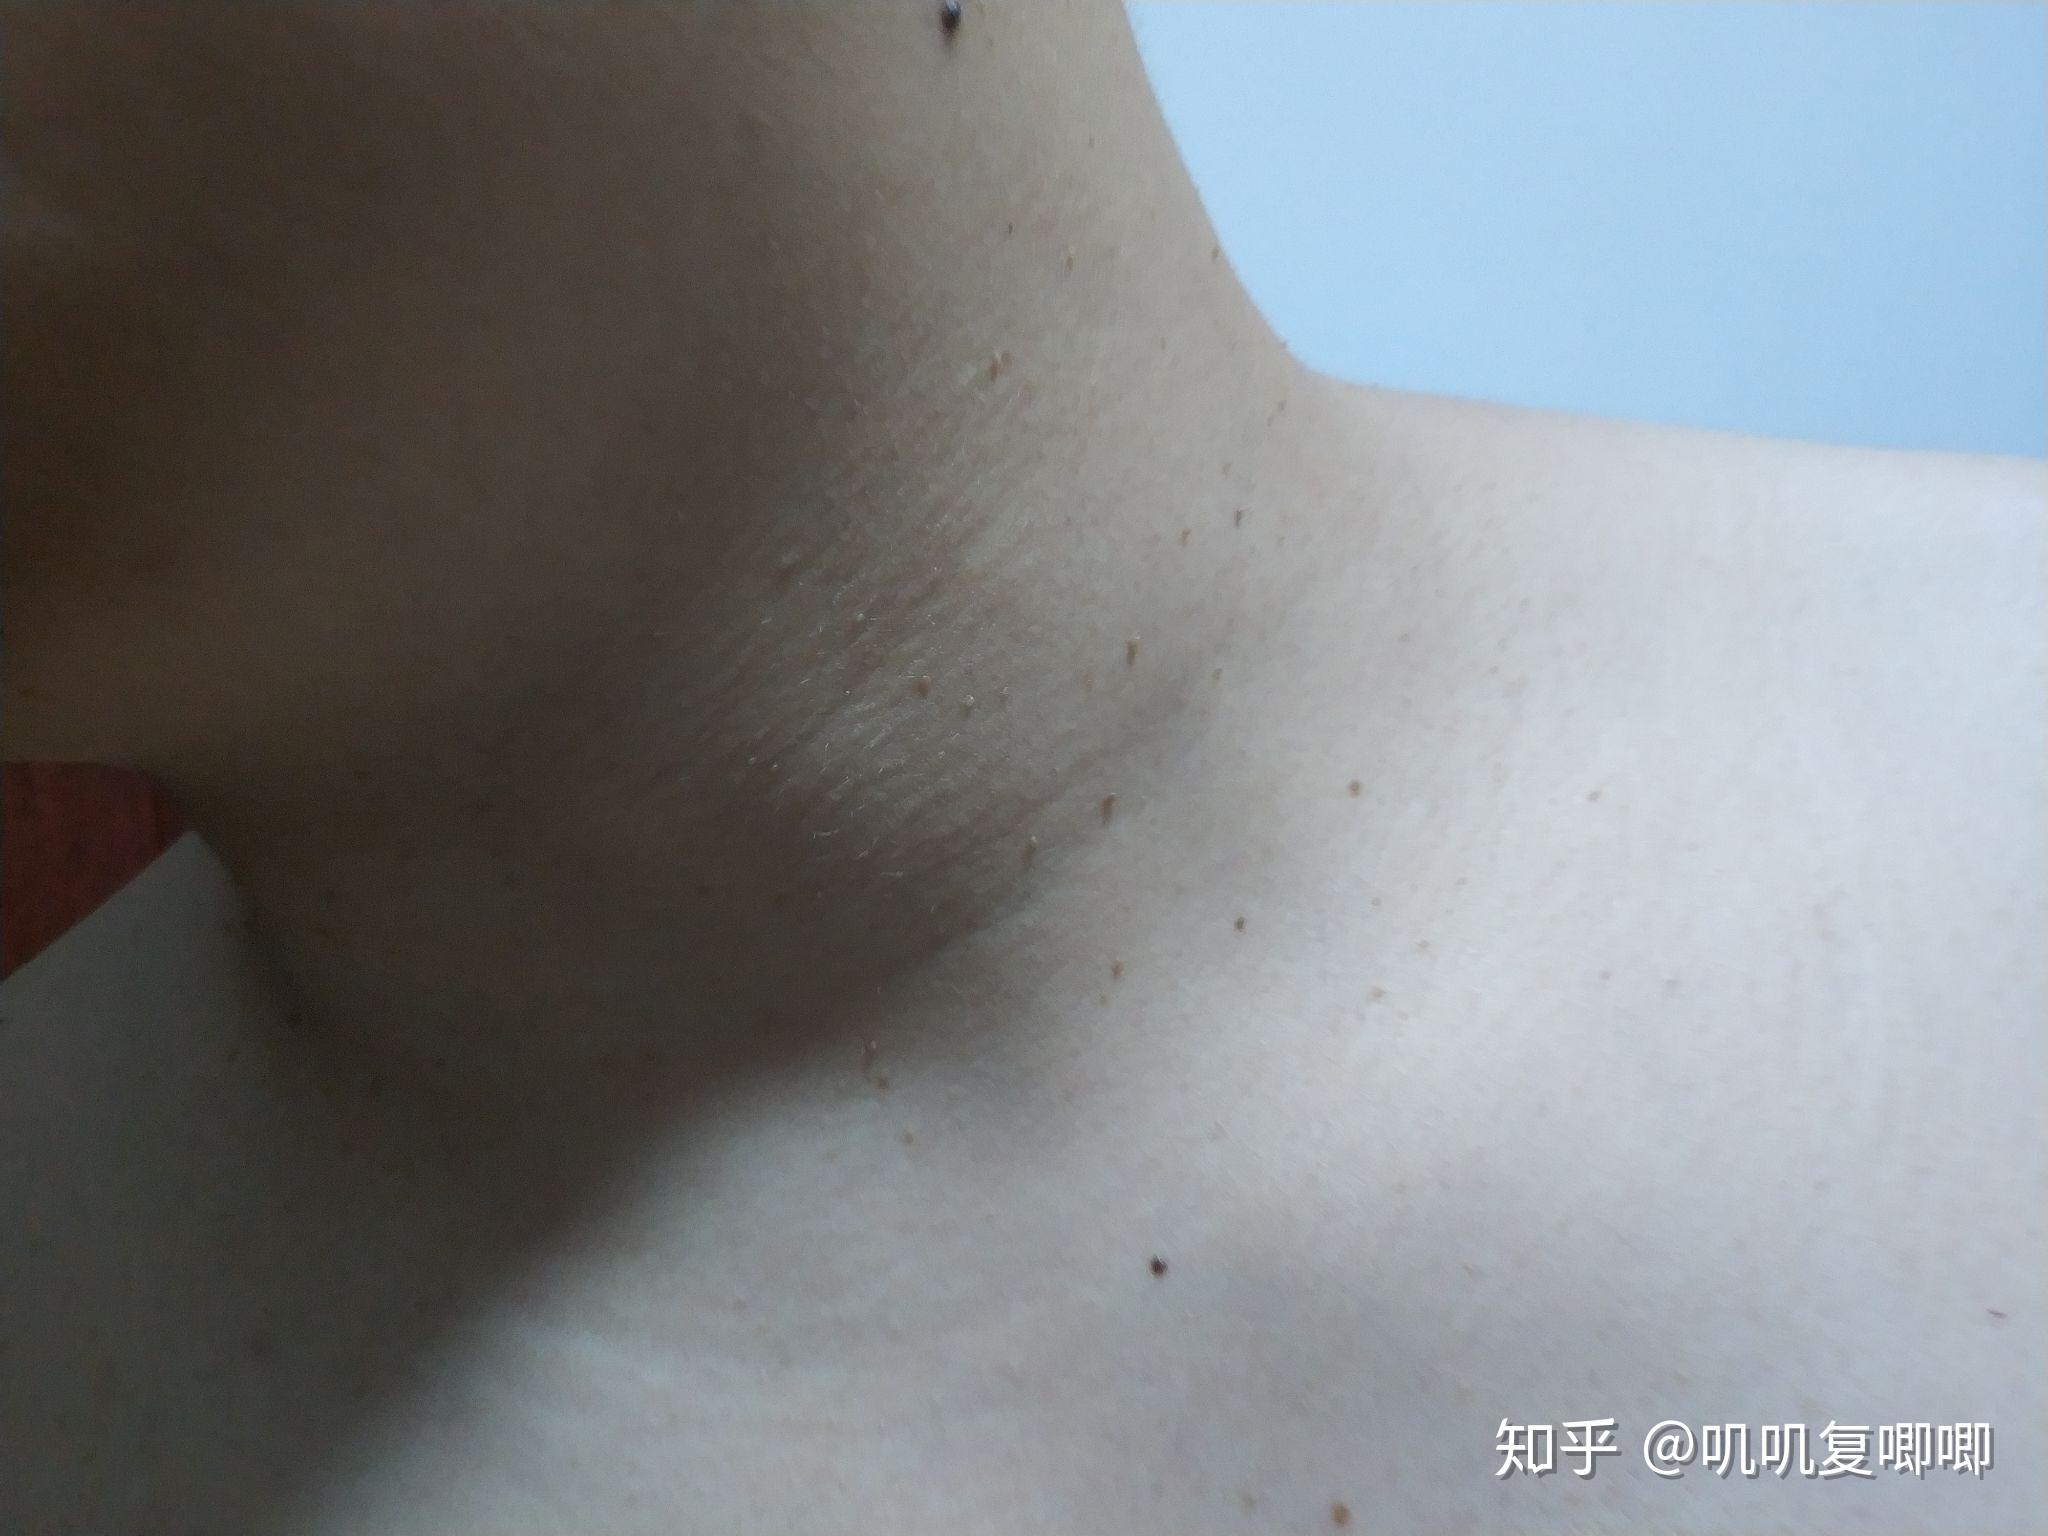 丝状疣初期图片脖子图片